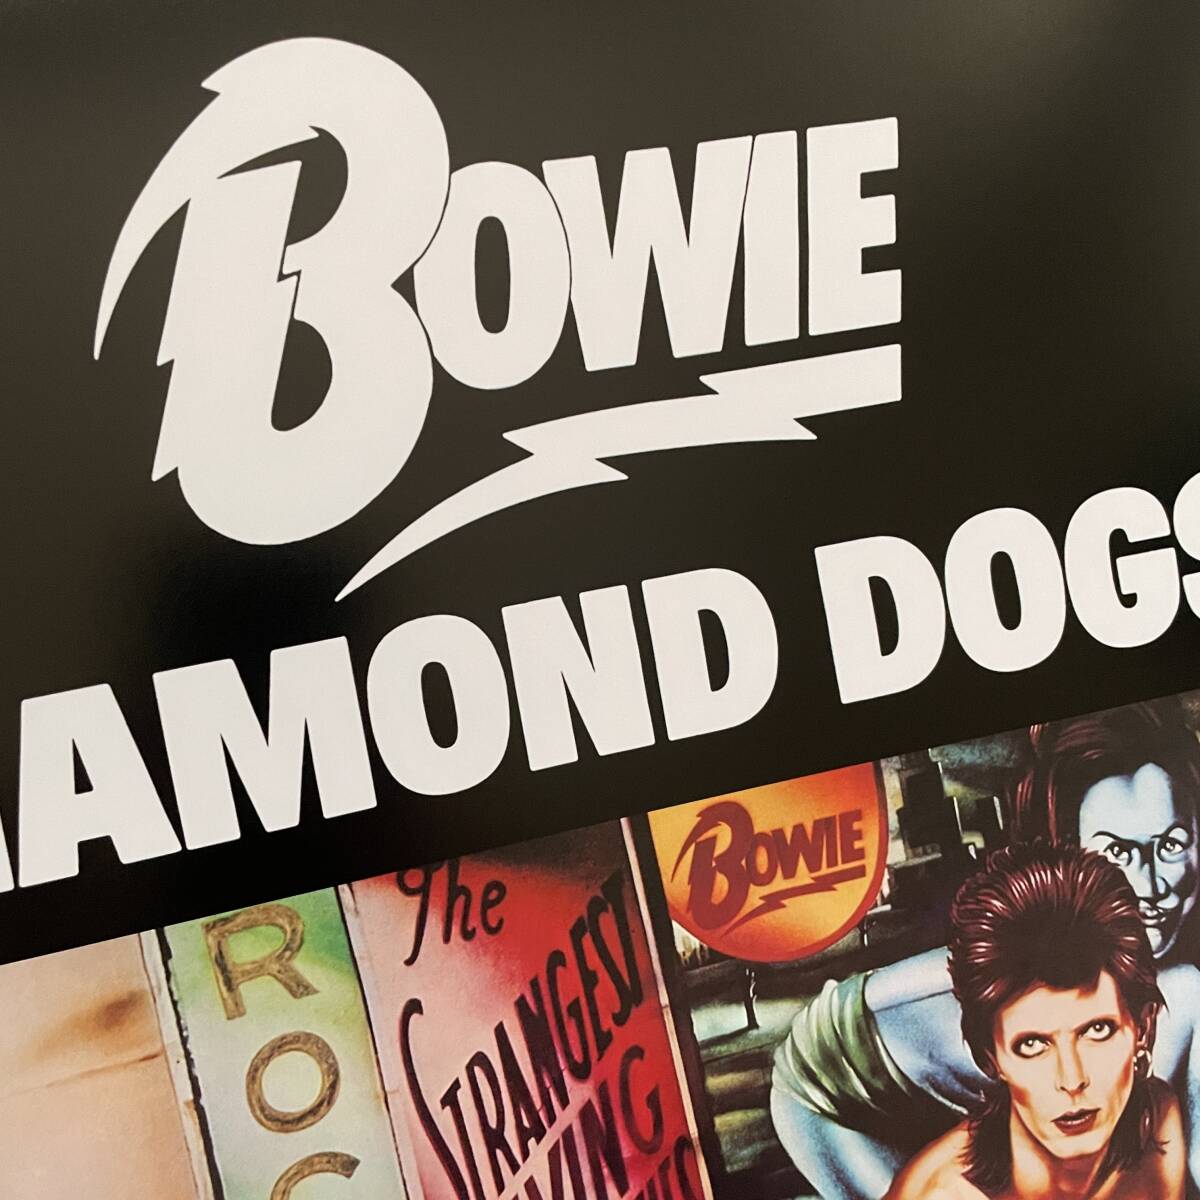  постер * David * bow i(David Bowie) 1974 [ бриллиант. собака ] продажа в это время промо постер копия *Diamond Dogs